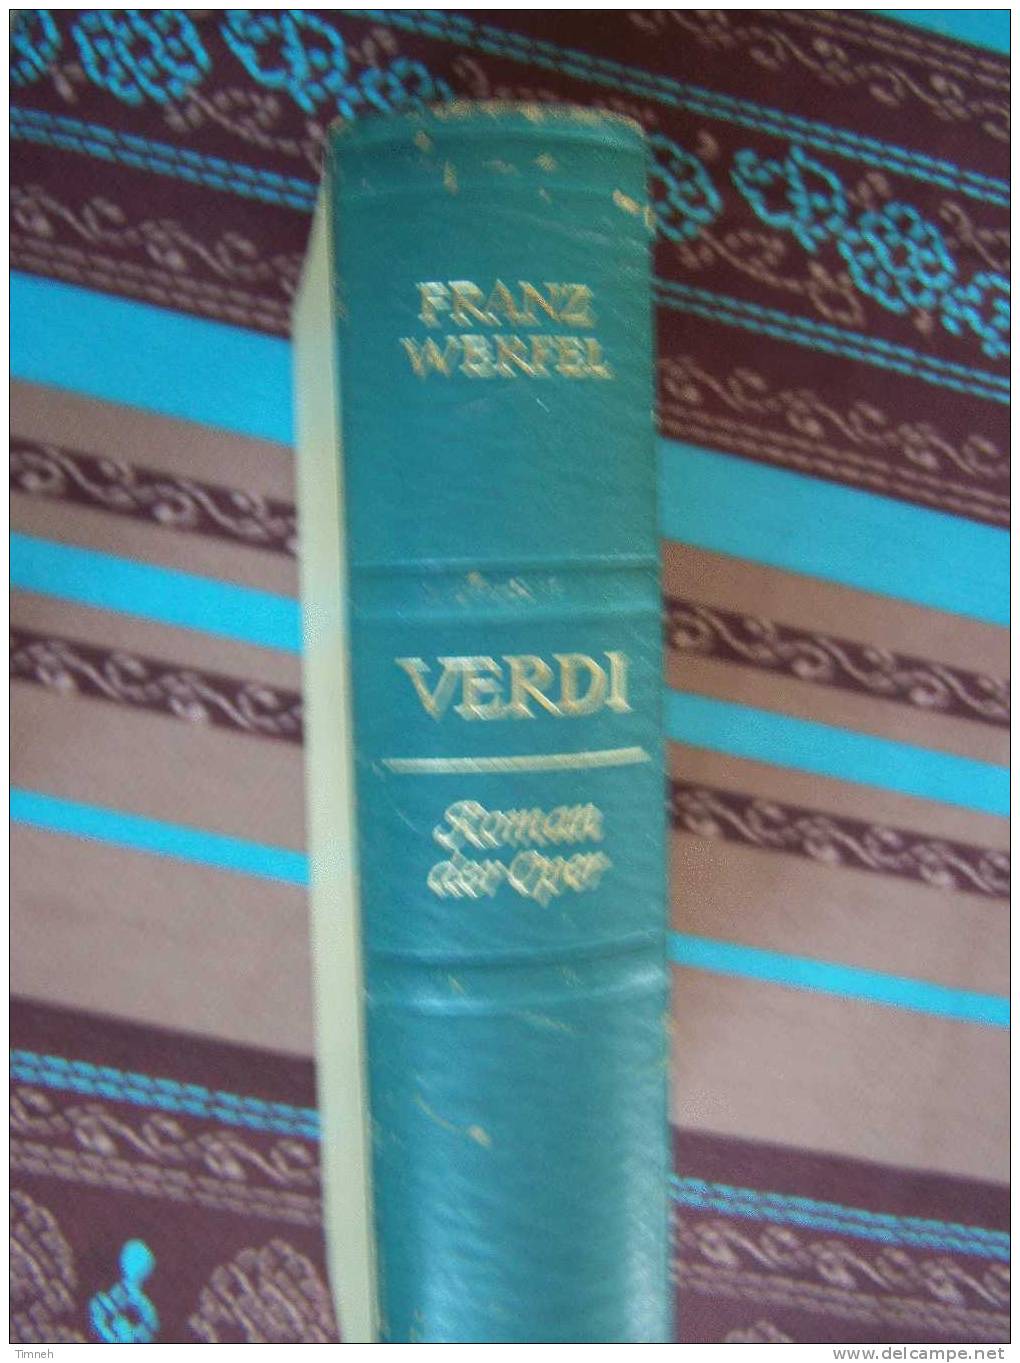 VERDI-Roman Der Oper-Franz Werfel-1955-Deutsche Buch Gemeinschaft- - Biografie & Memorie